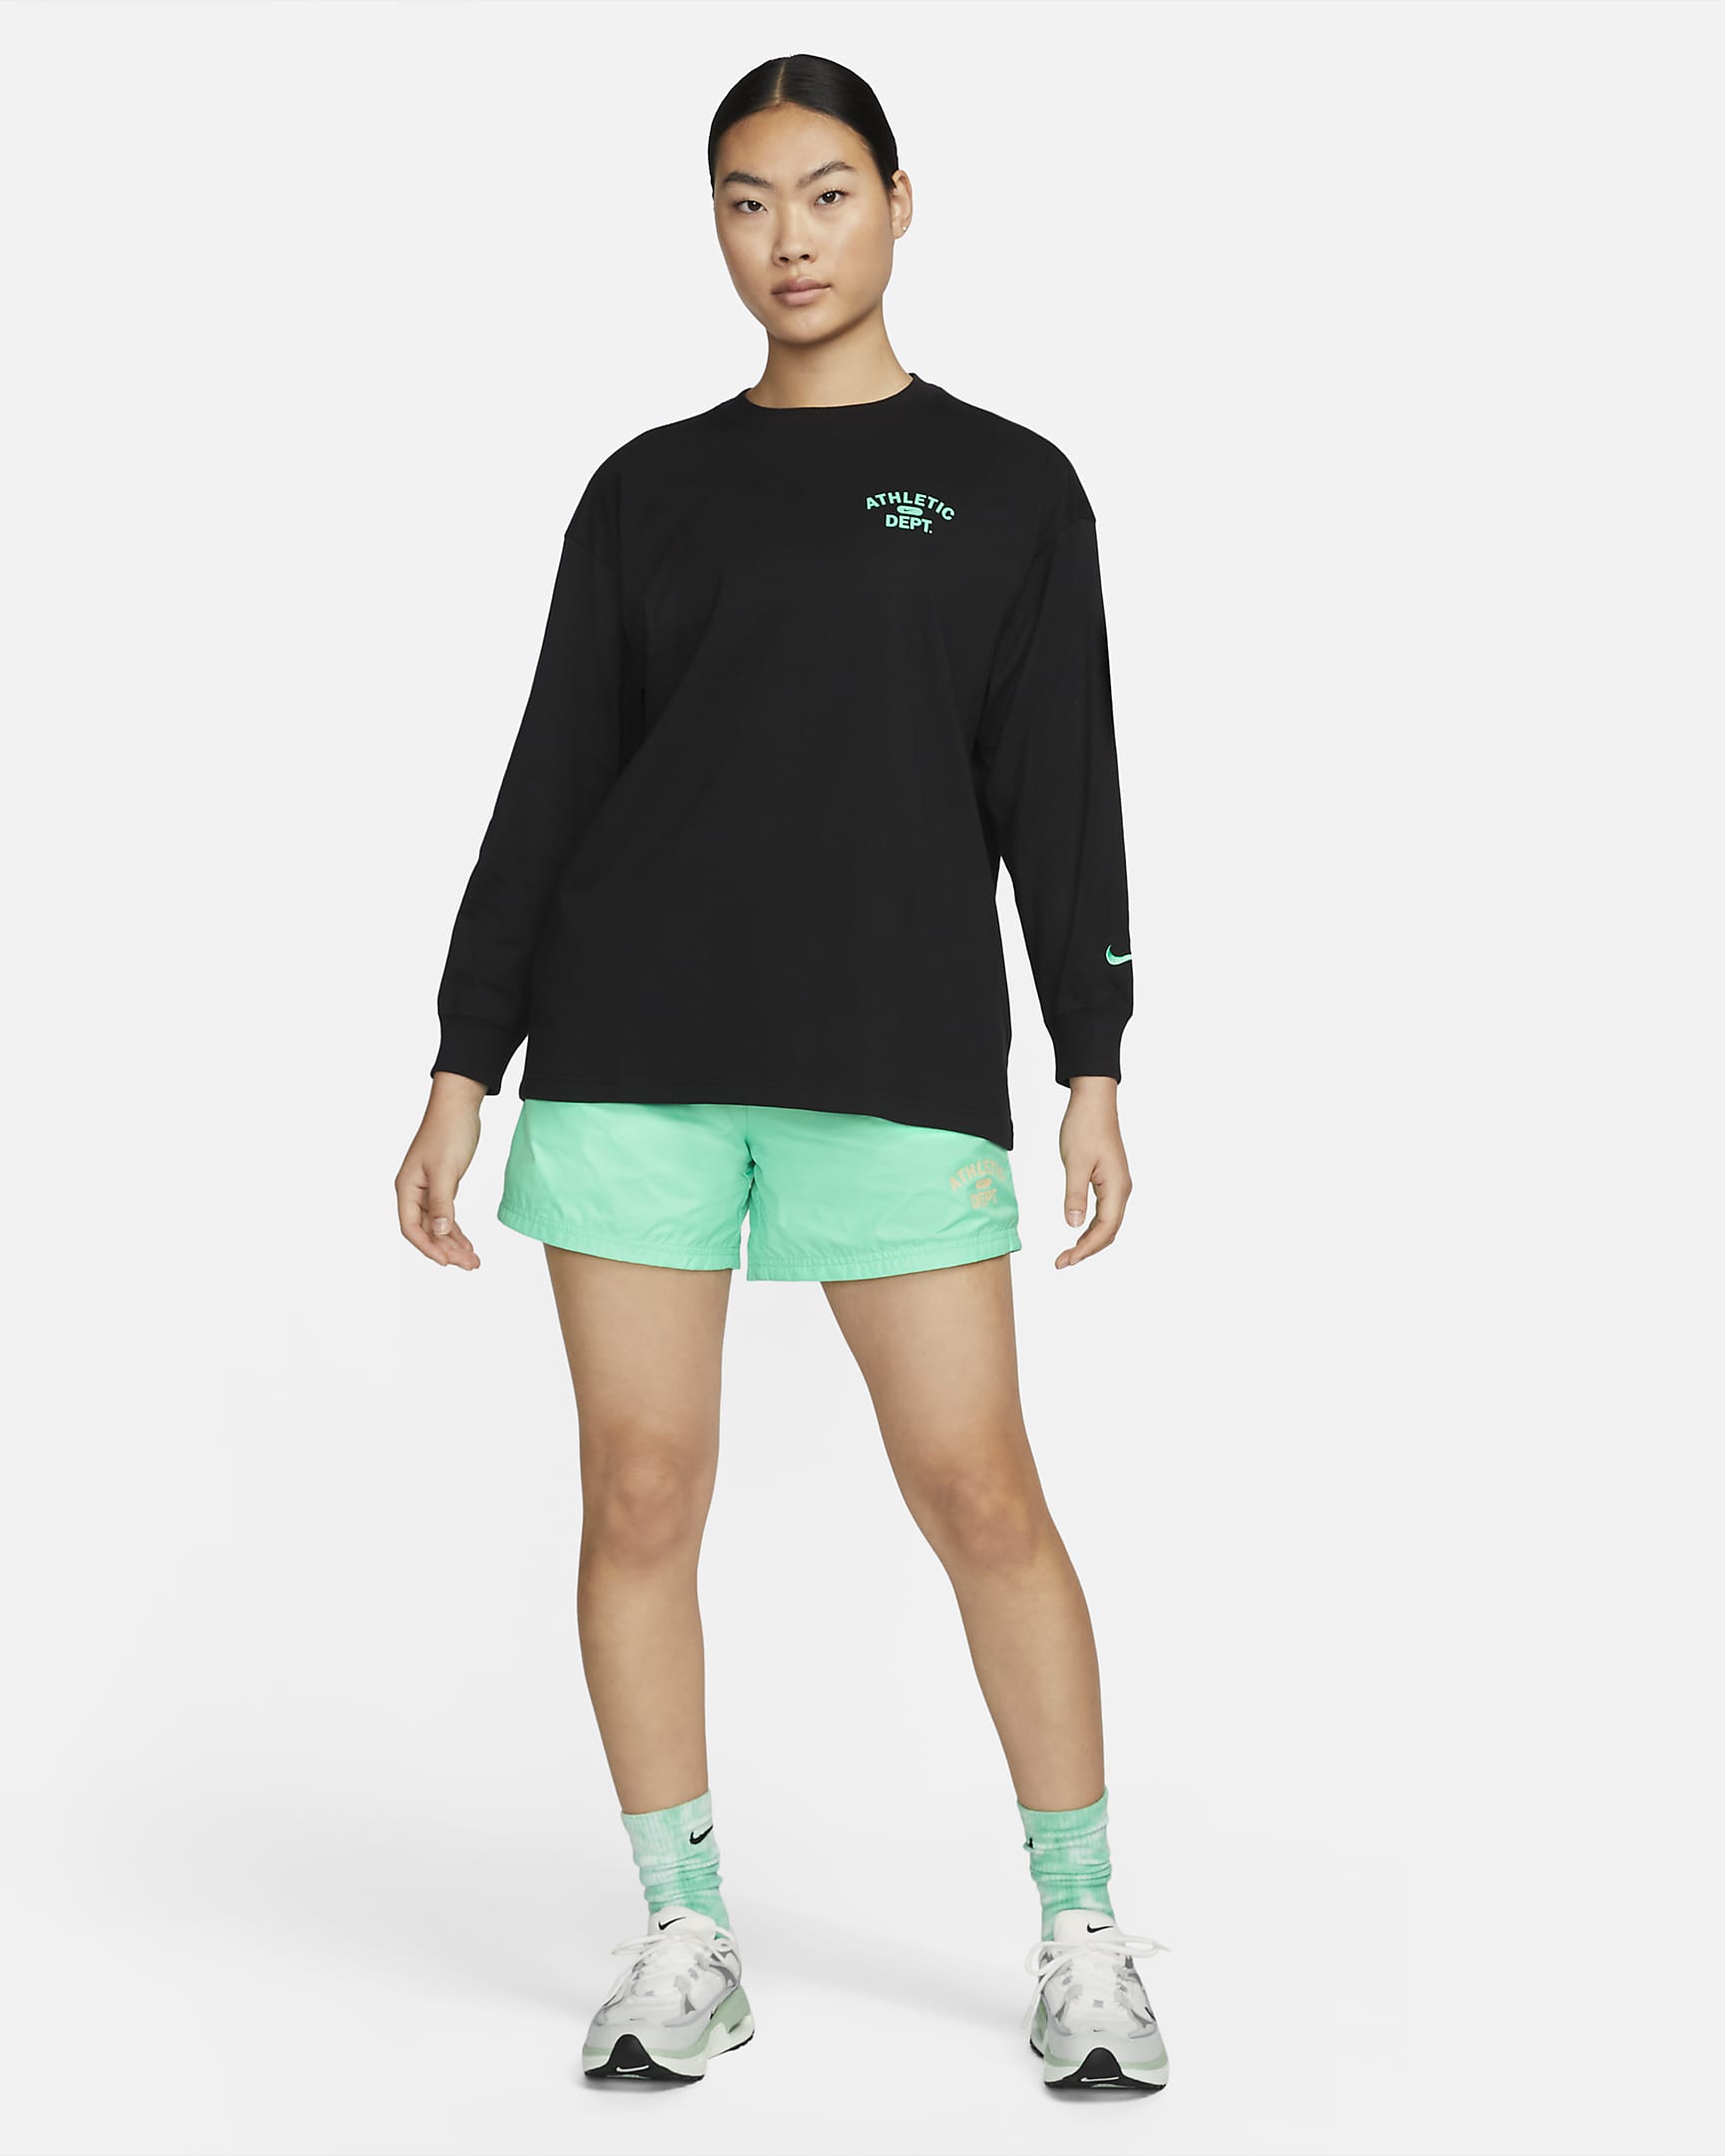 Nike Sportswear Women's Long-Sleeve Top. Nike PH